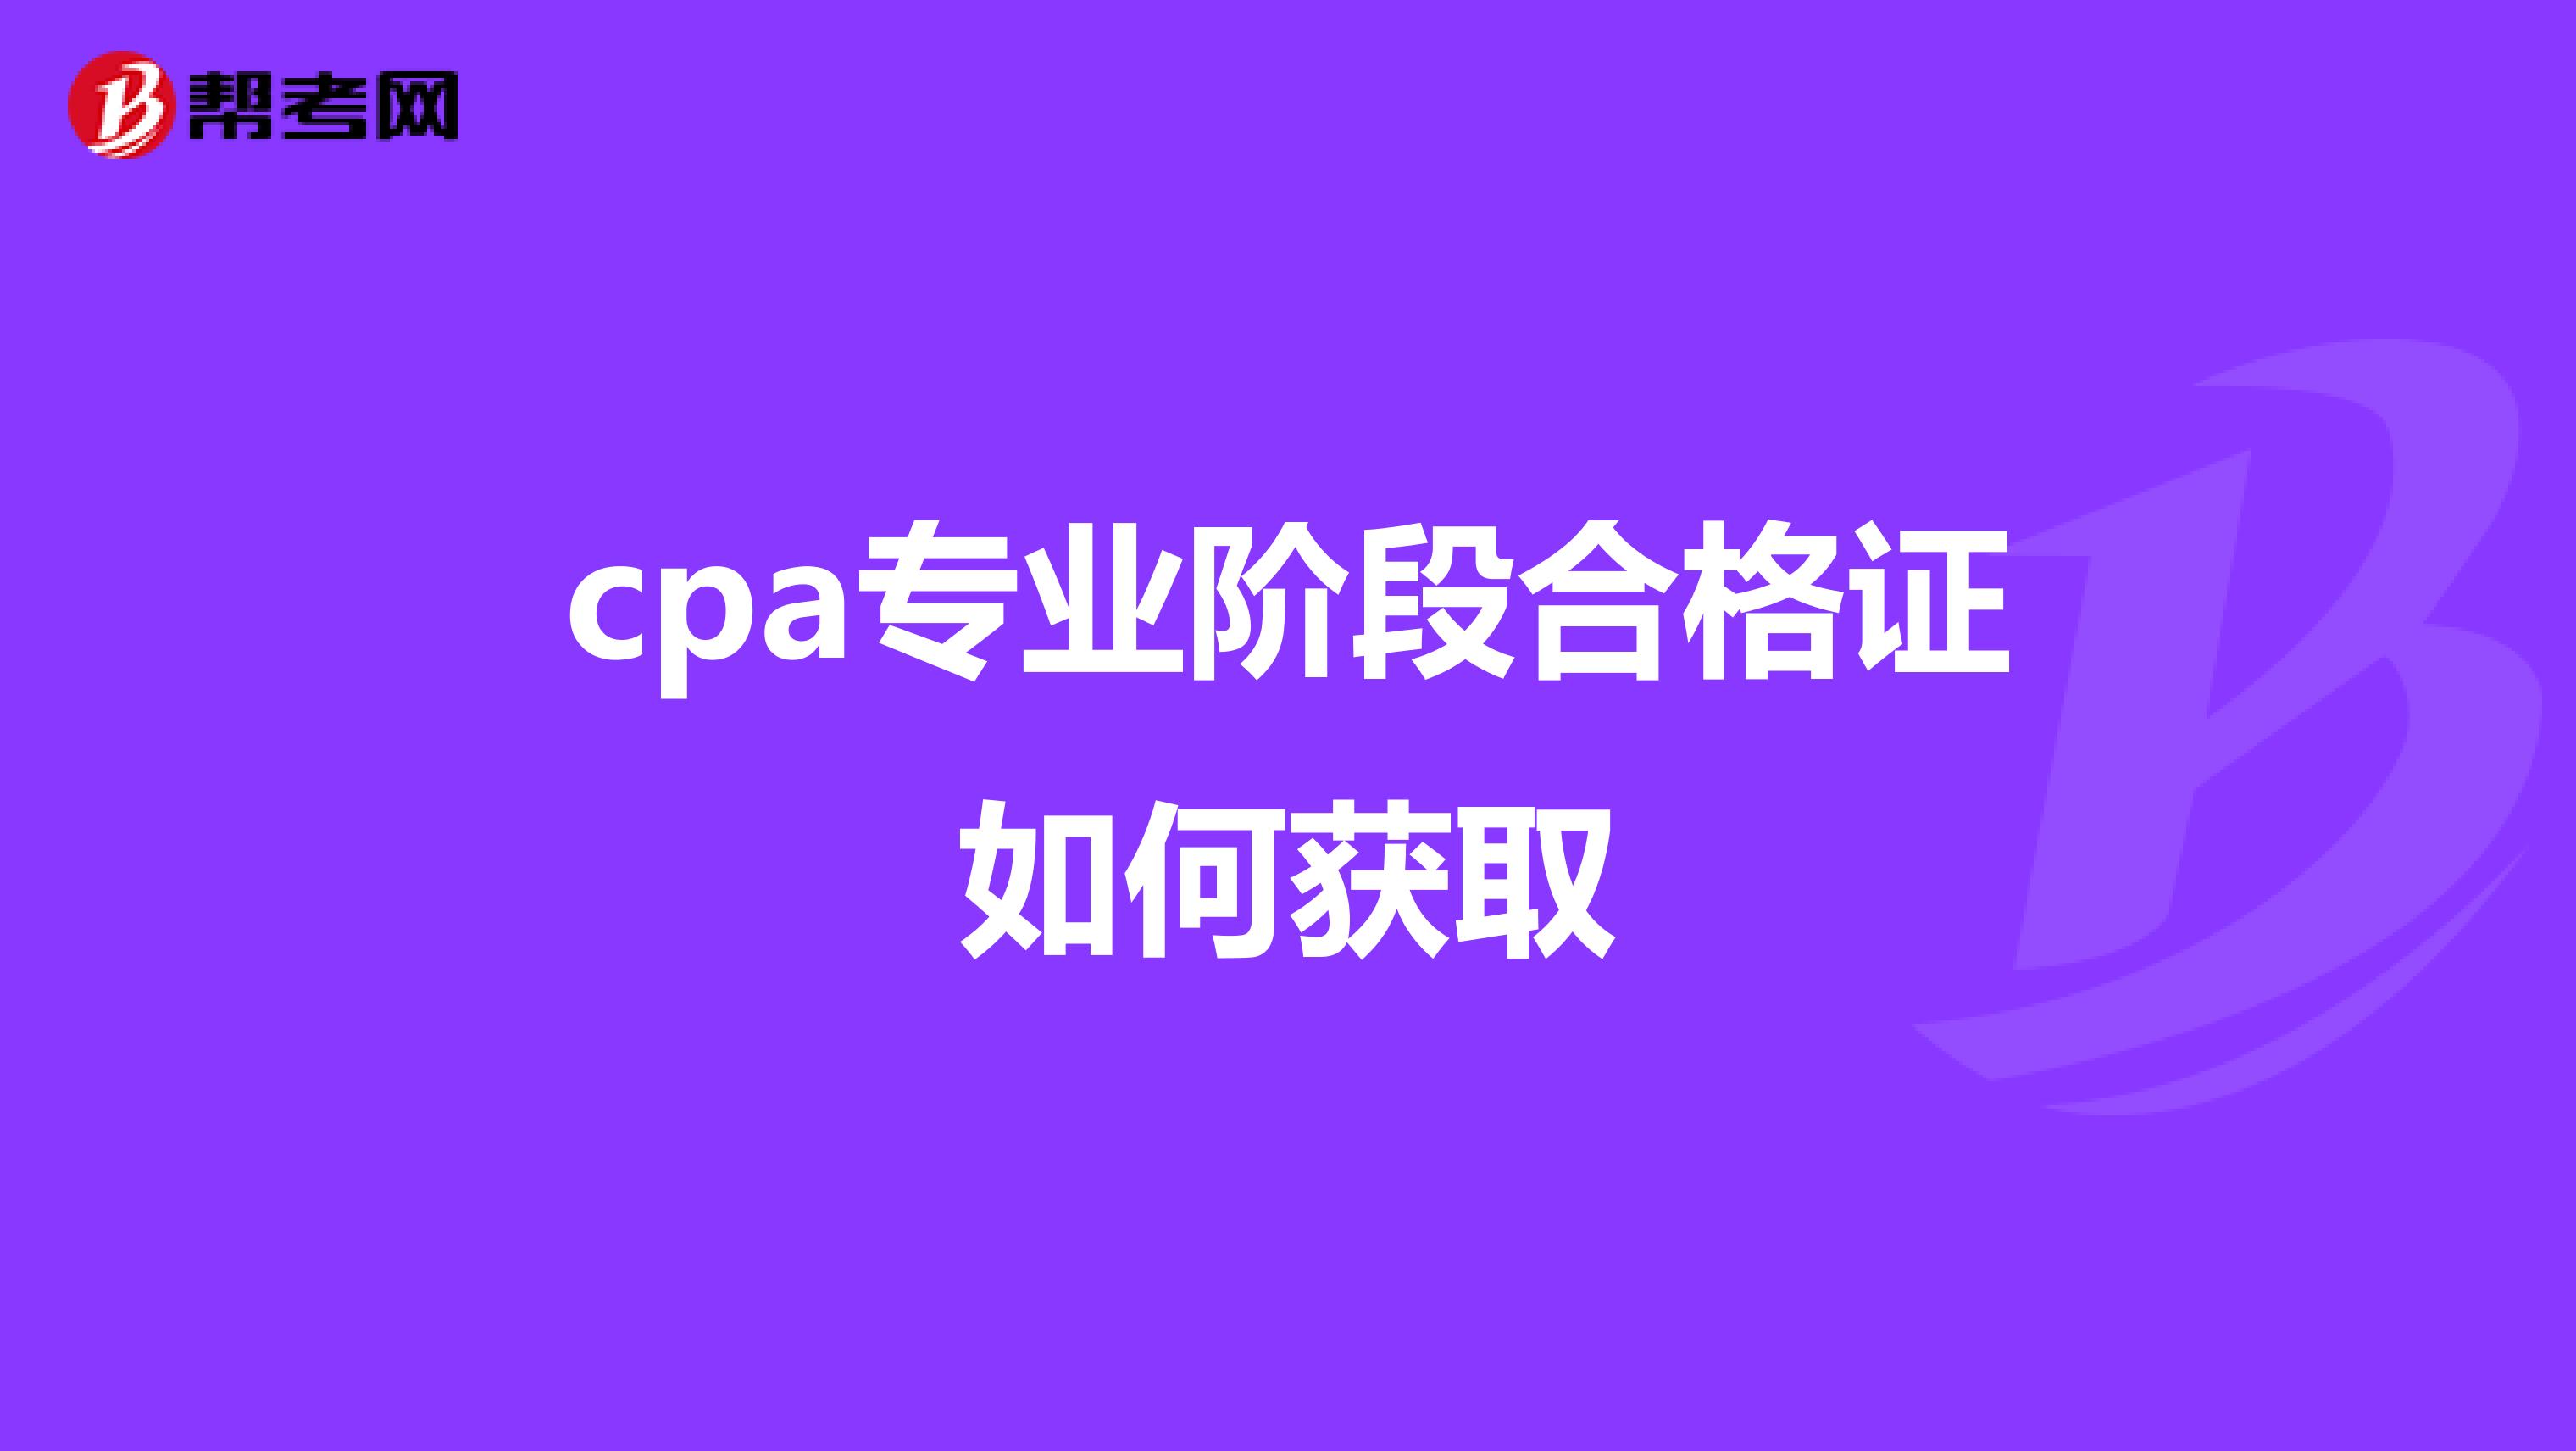 cpa专业阶段合格证如何获取